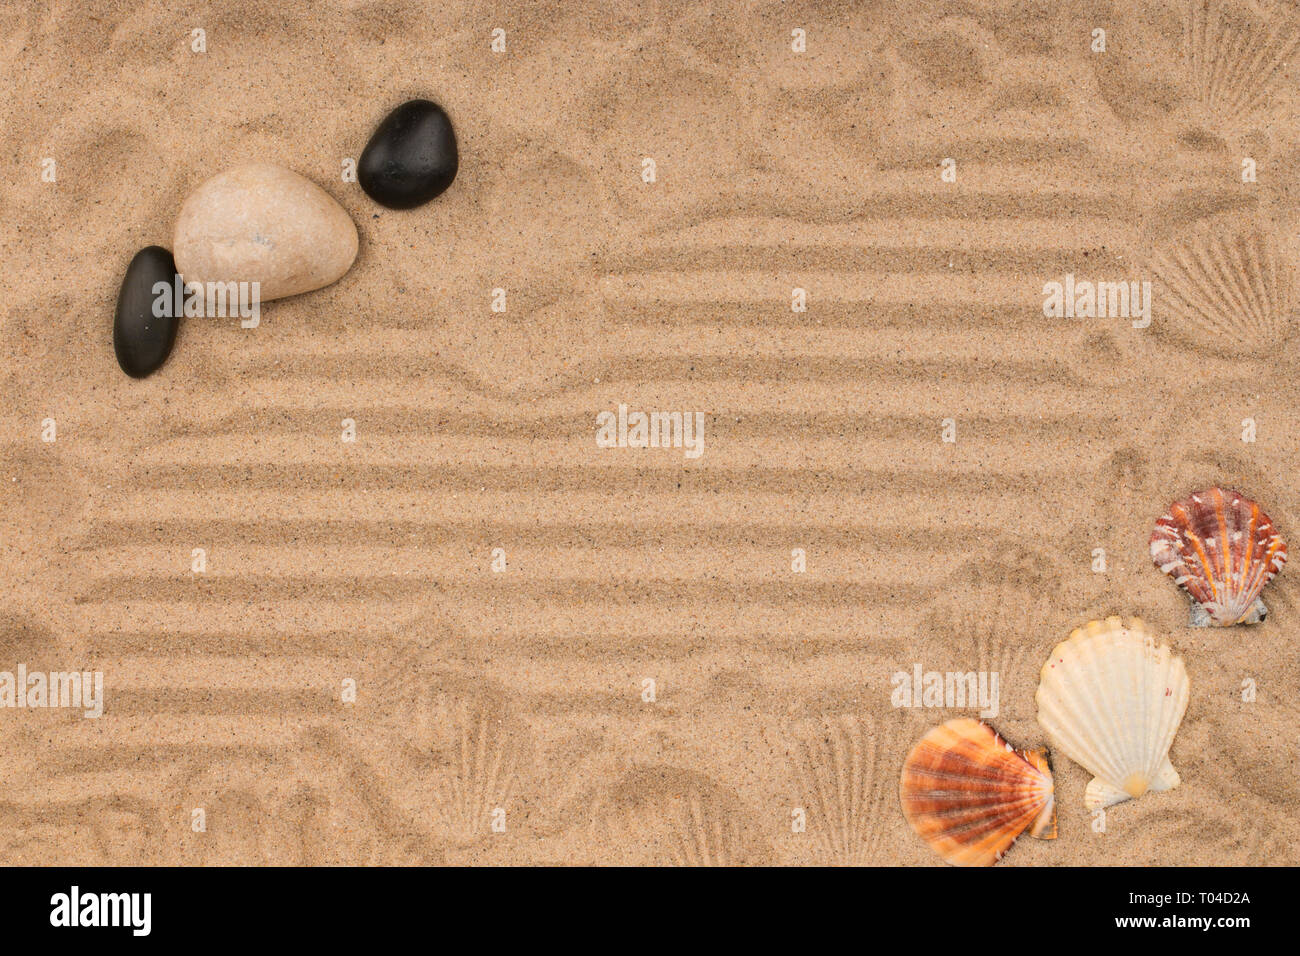 Las piedras, conchas y sus impresiones en la arena. Vista superior Foto de stock